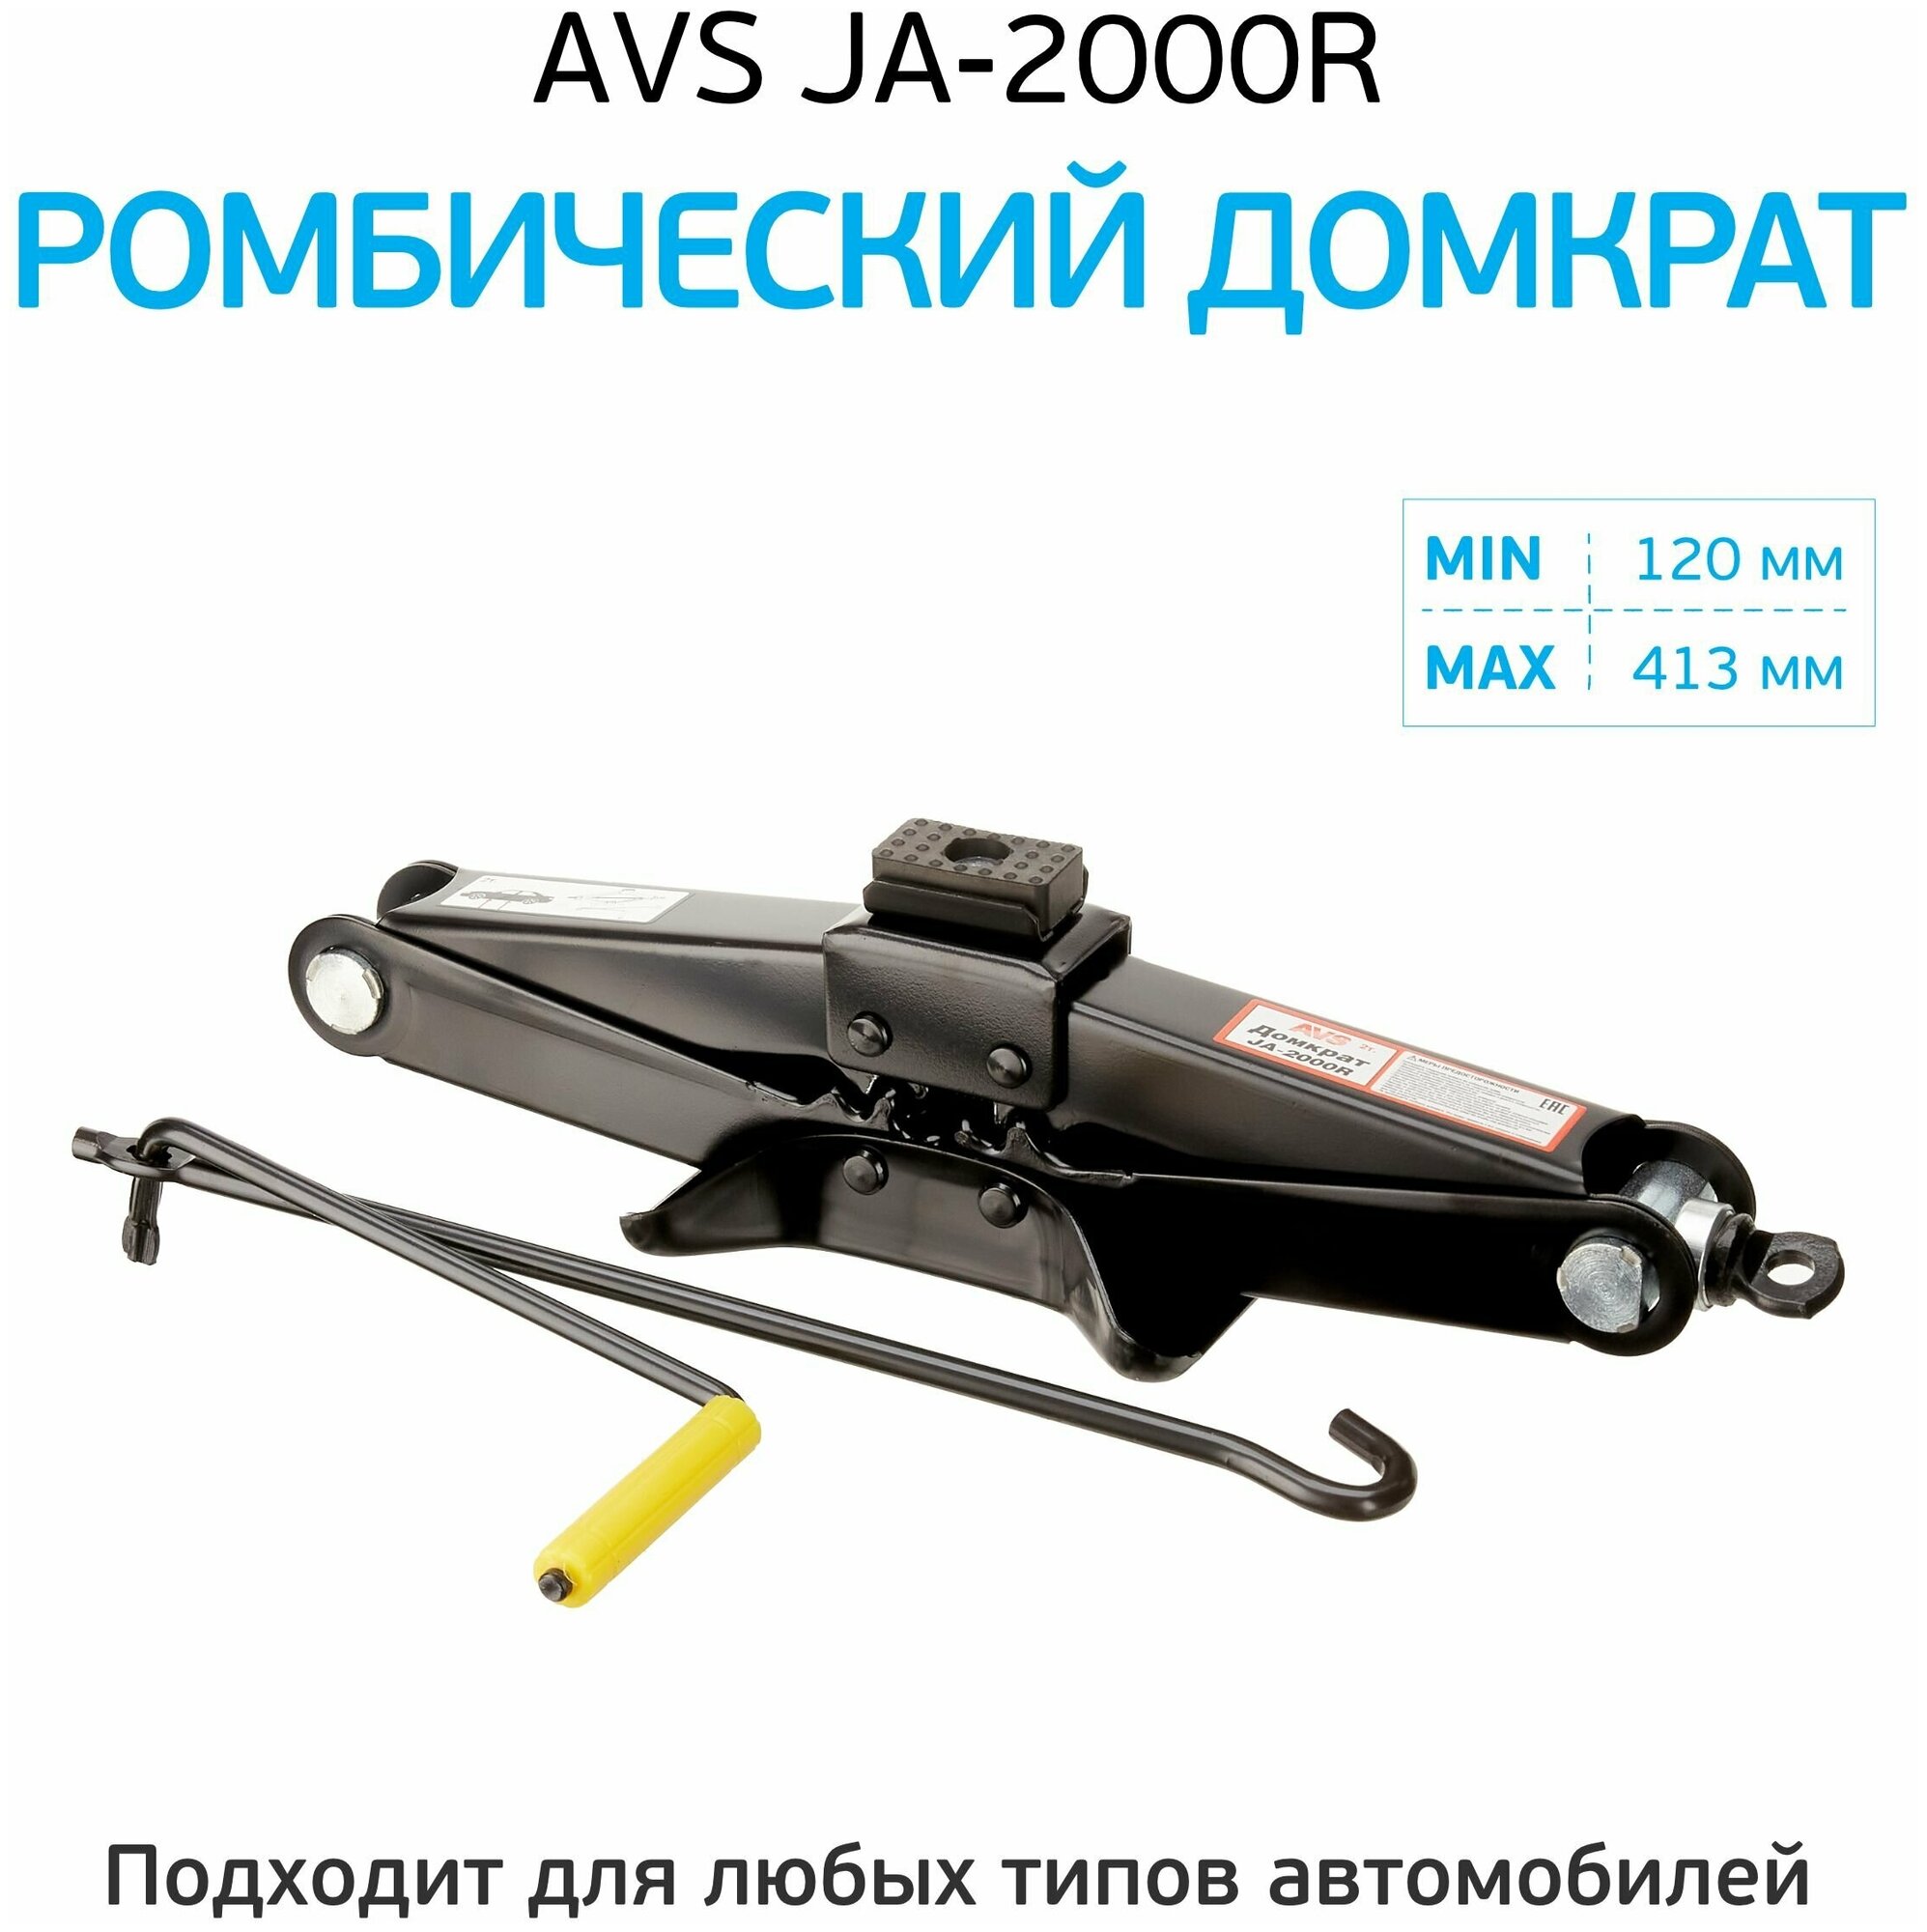 Домкрат ромбический AVS 2 т JA-2000R